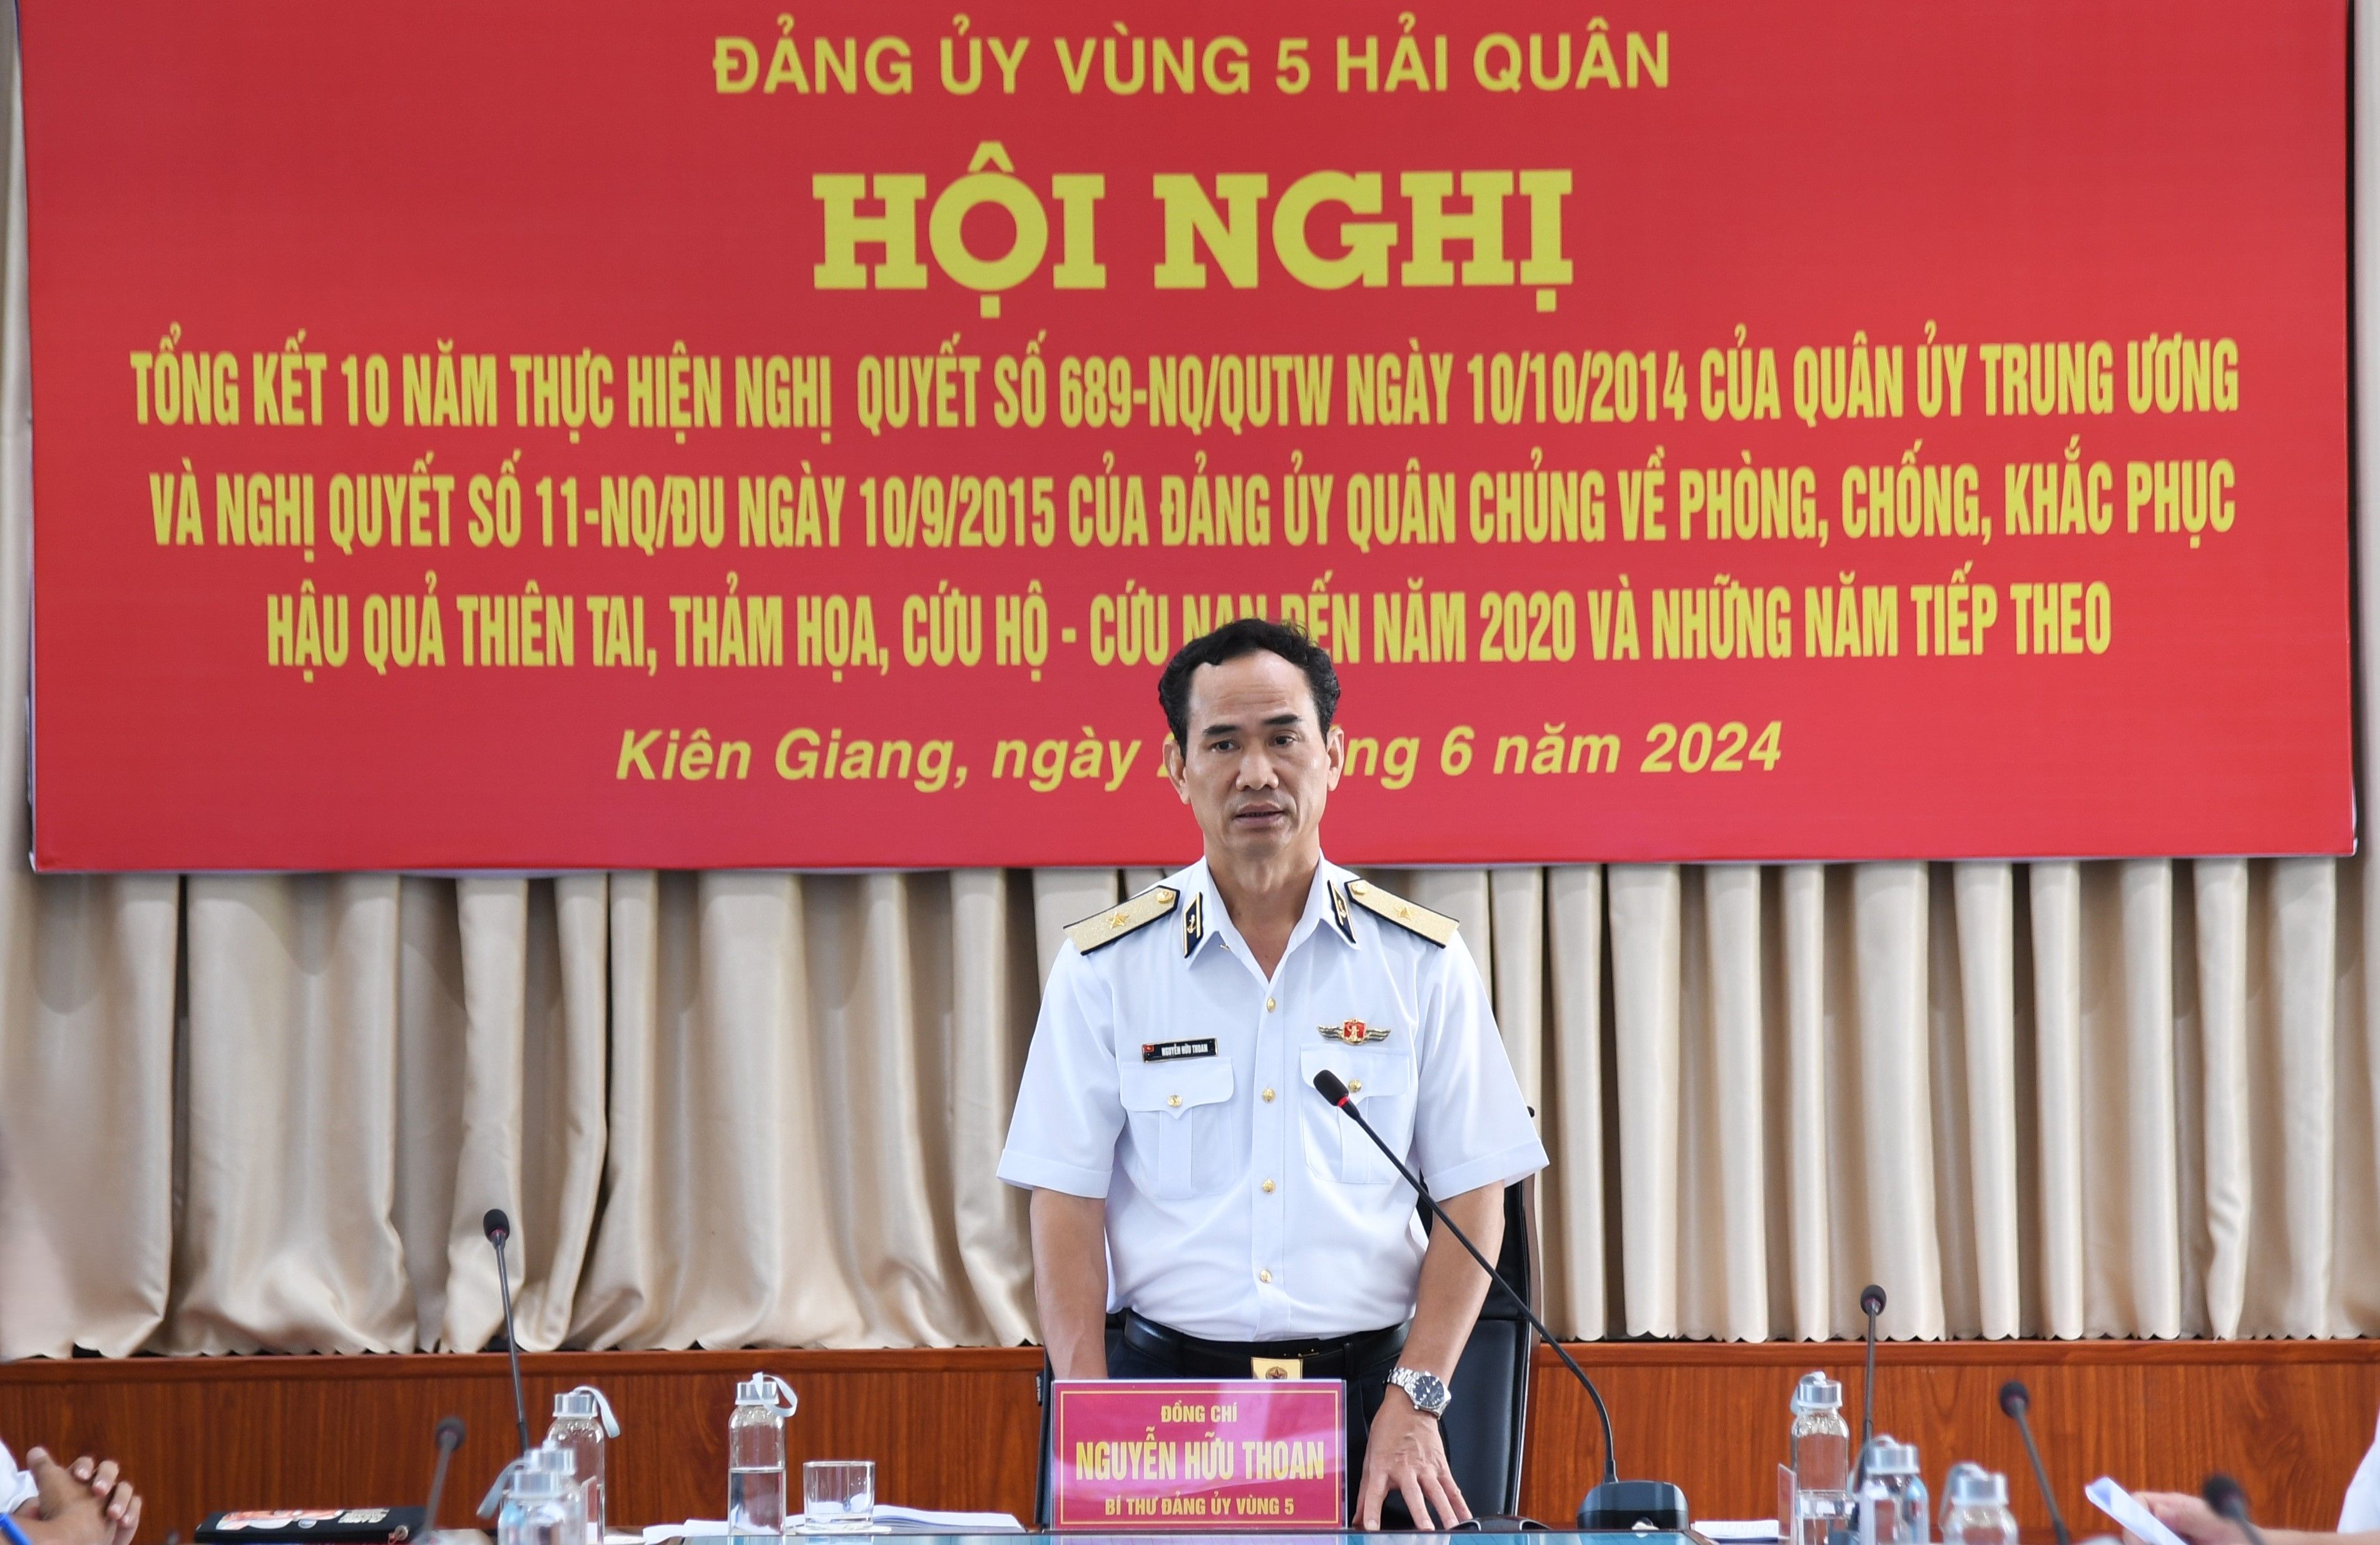 Vùng 5 Hải quân thực hiện tốt Nghị quyết số 689 của Quân ủy Trung ương 